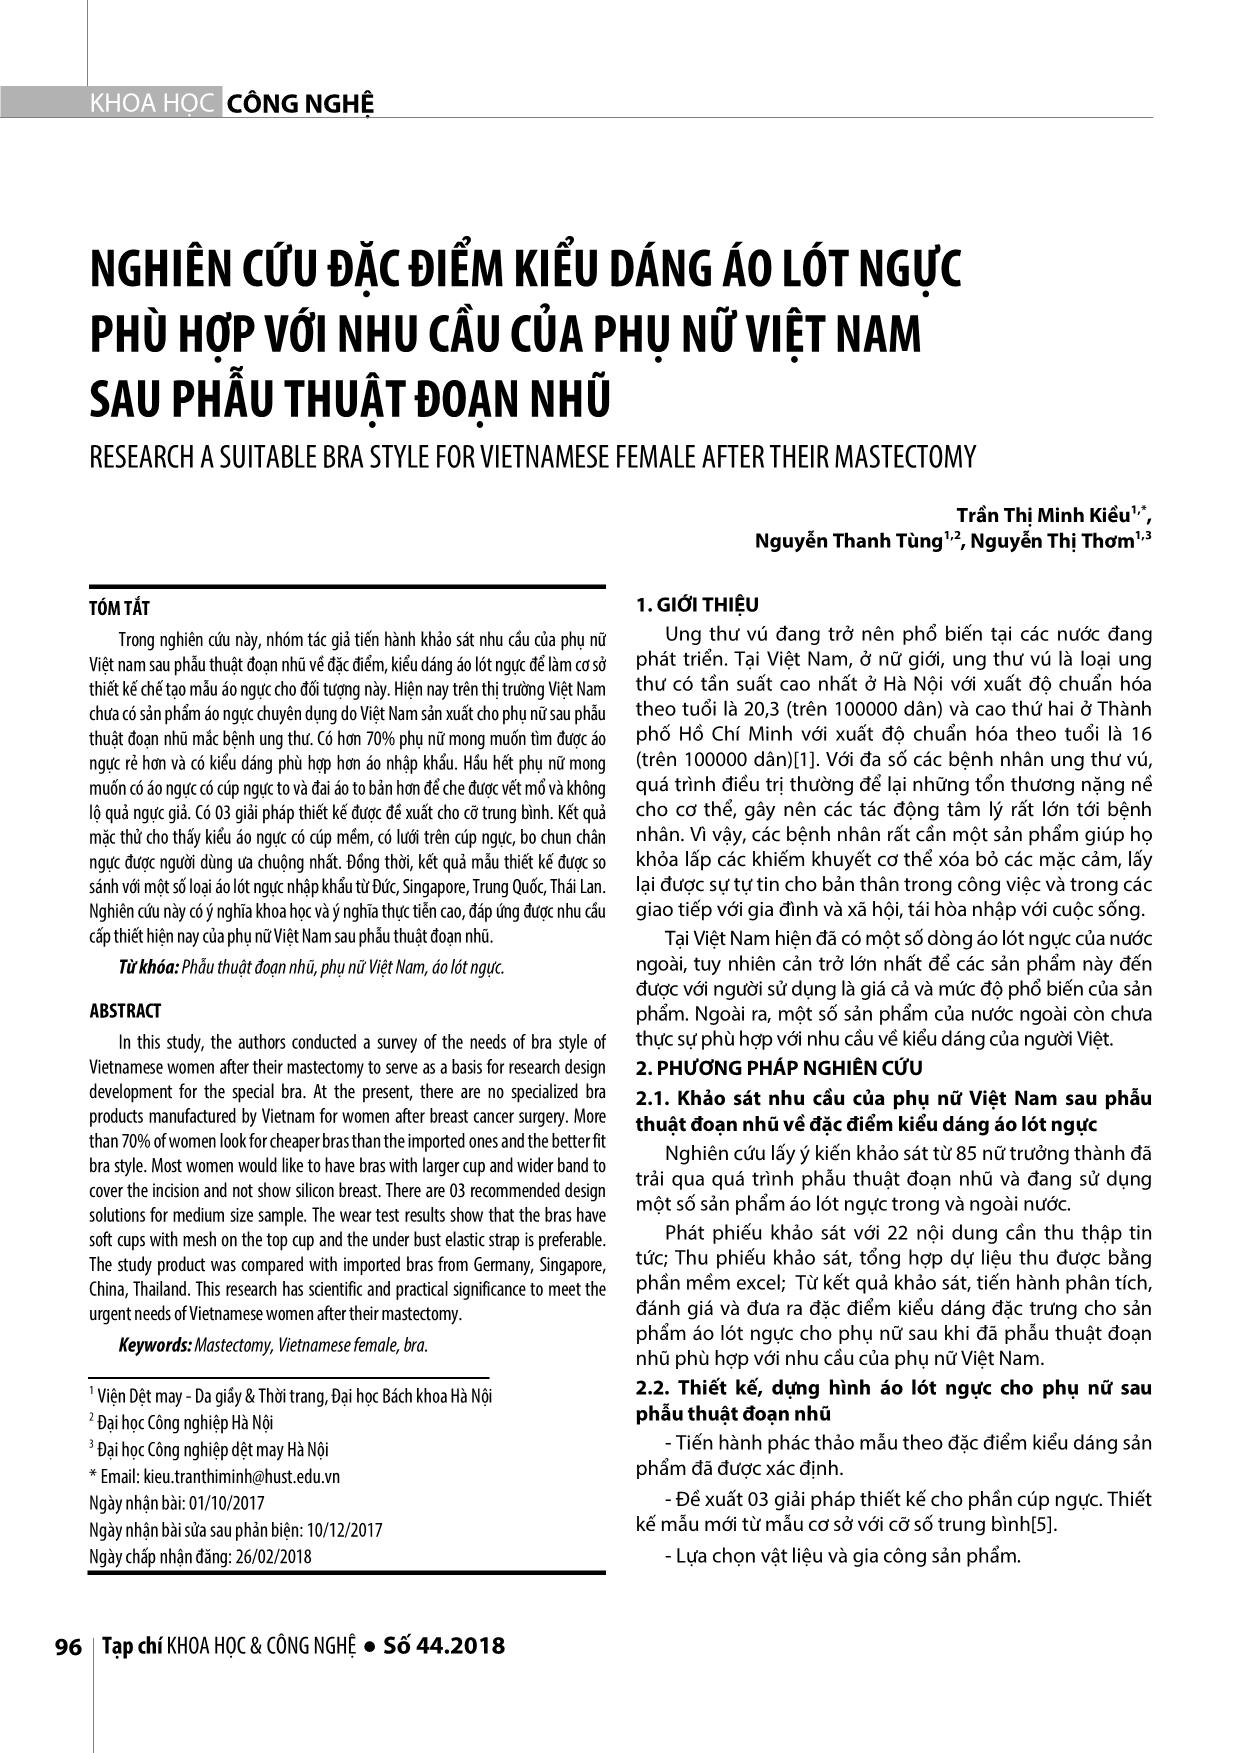 Nghiên cứu đặc điểm kiểu dáng áo lót ngực phù hợp với nhu cầu của phụ nữ Việt Nam sau phẫu thuật đoạn nhũ trang 1